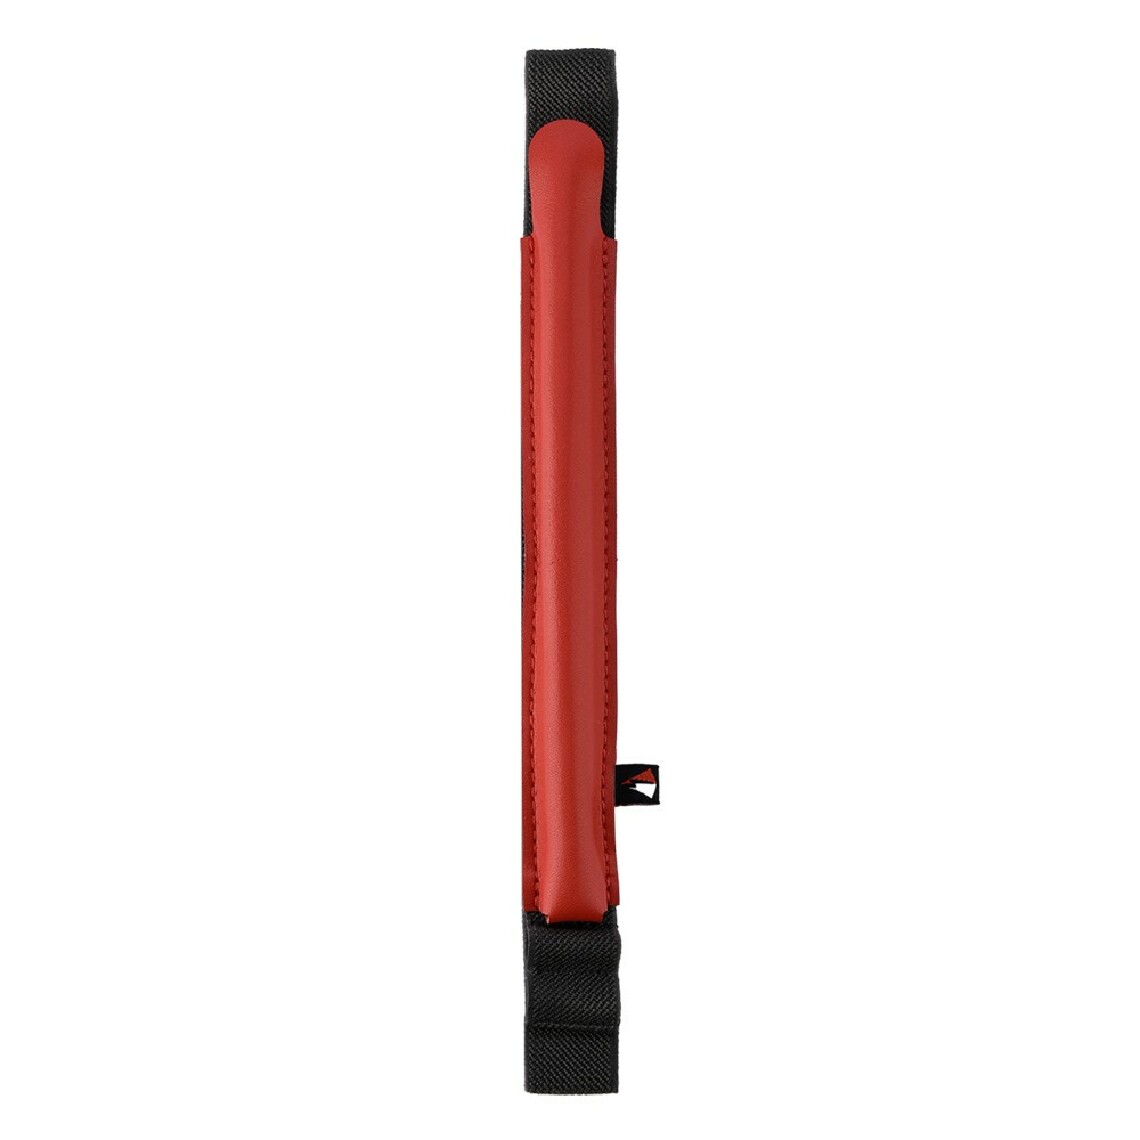 Other - Etui en PU rouge pour votre Apple Pencil 2nd Generation/1st Generation - Coque, étui smartphone